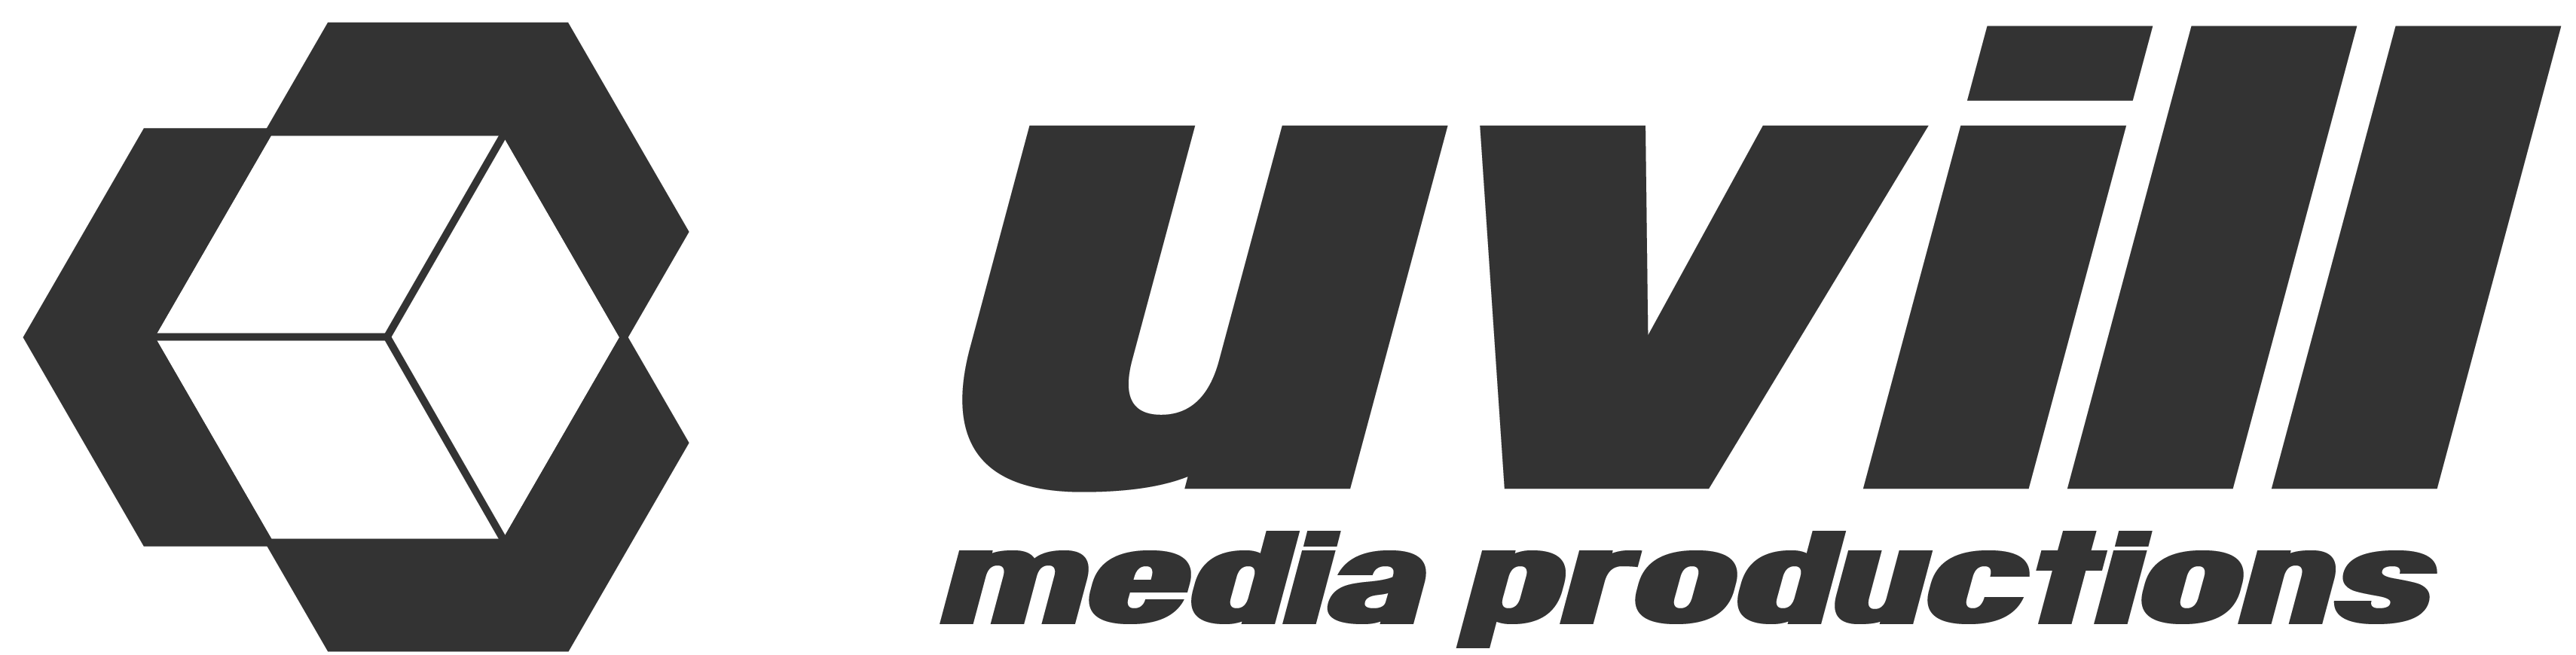 uvill-media-productions